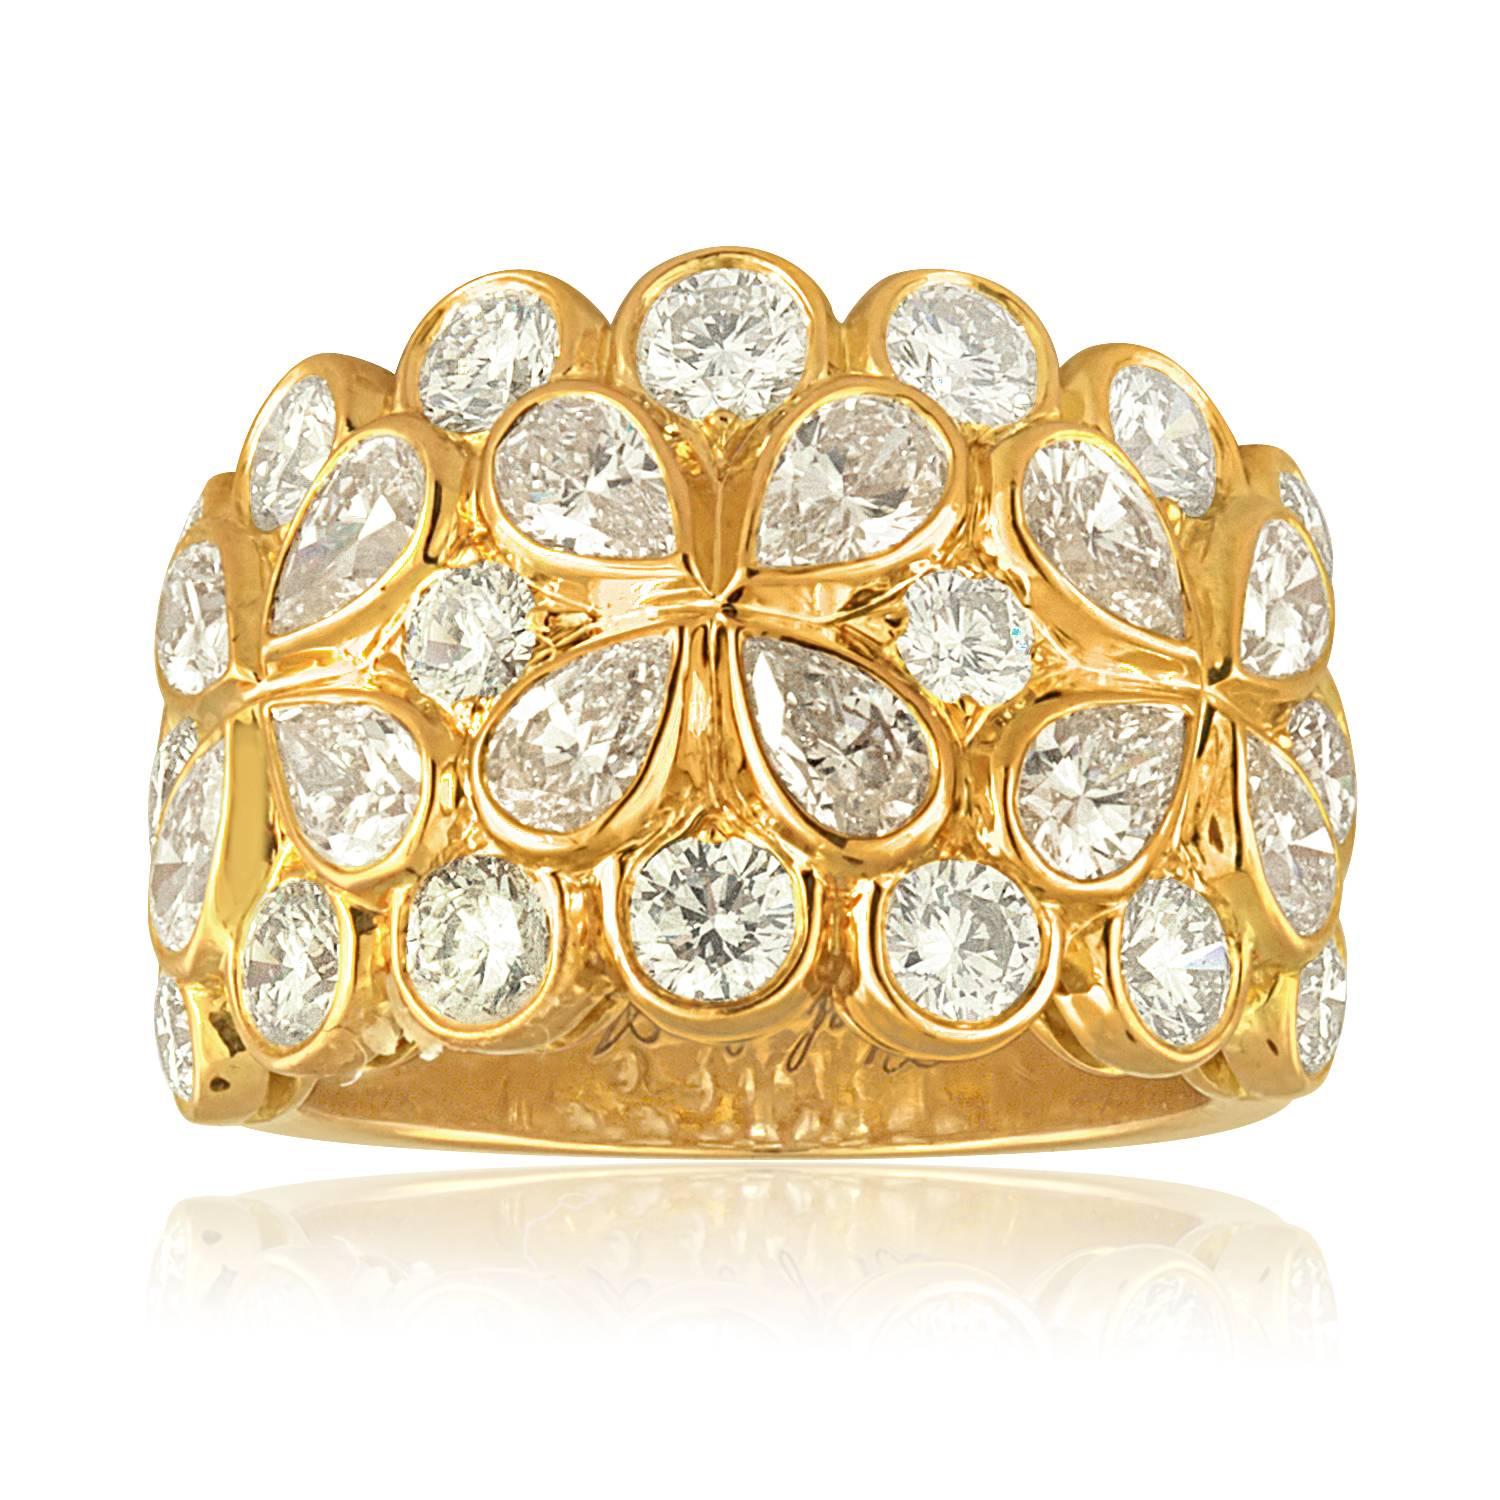 La bague est en or jaune 18 carats.
Il y a 4,25ct de diamants F VVS.
L'anneau porte des marques de fabricant français sur l'extérieur de l'anneau.
La bague est accompagnée d'un certificat d'authenticité.
La bague est de taille 6,5, pas de